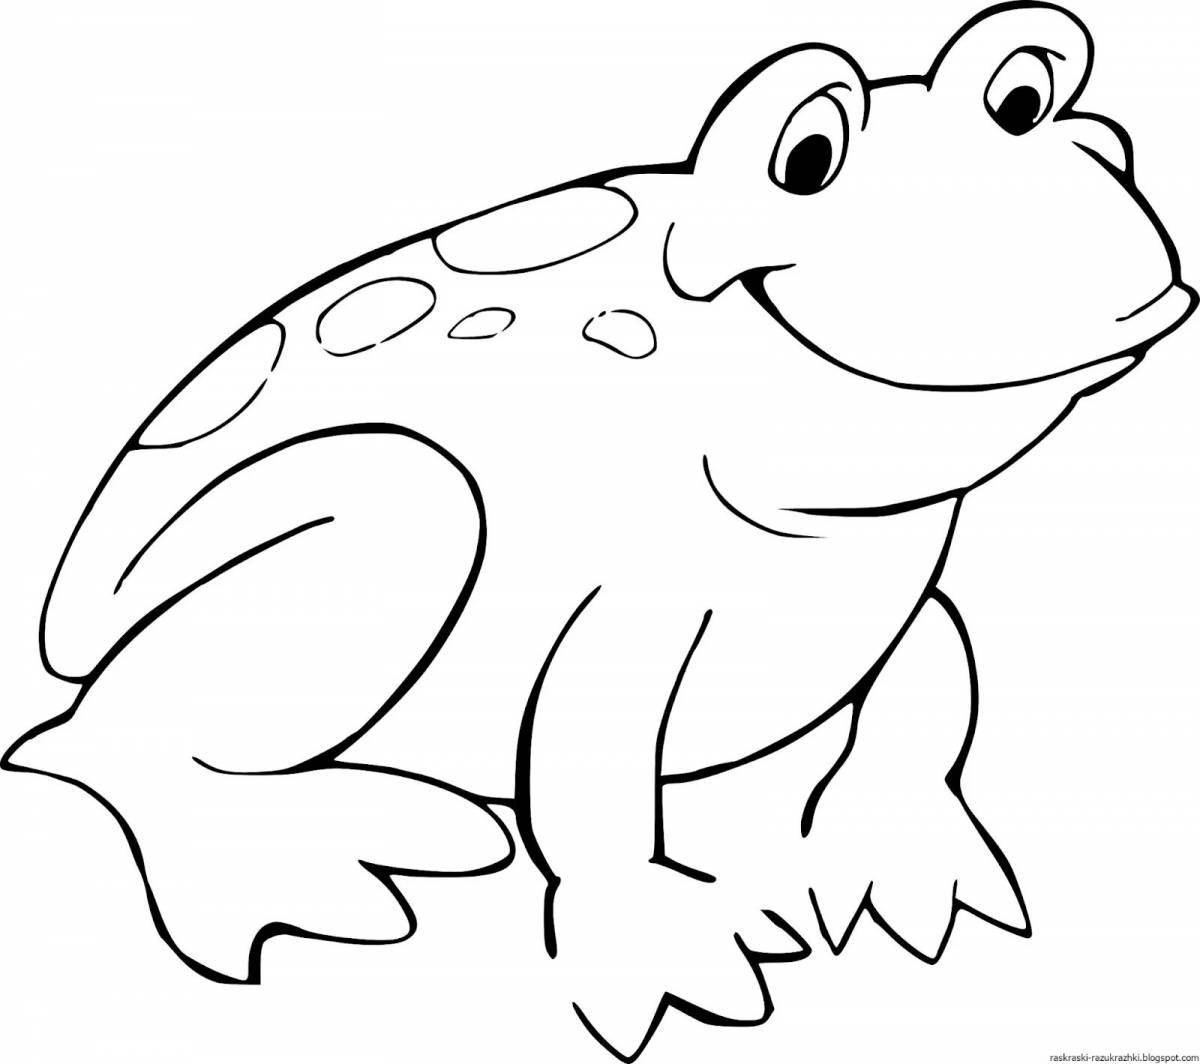 Милая лягушка-раскраска для детей 3-4 лет